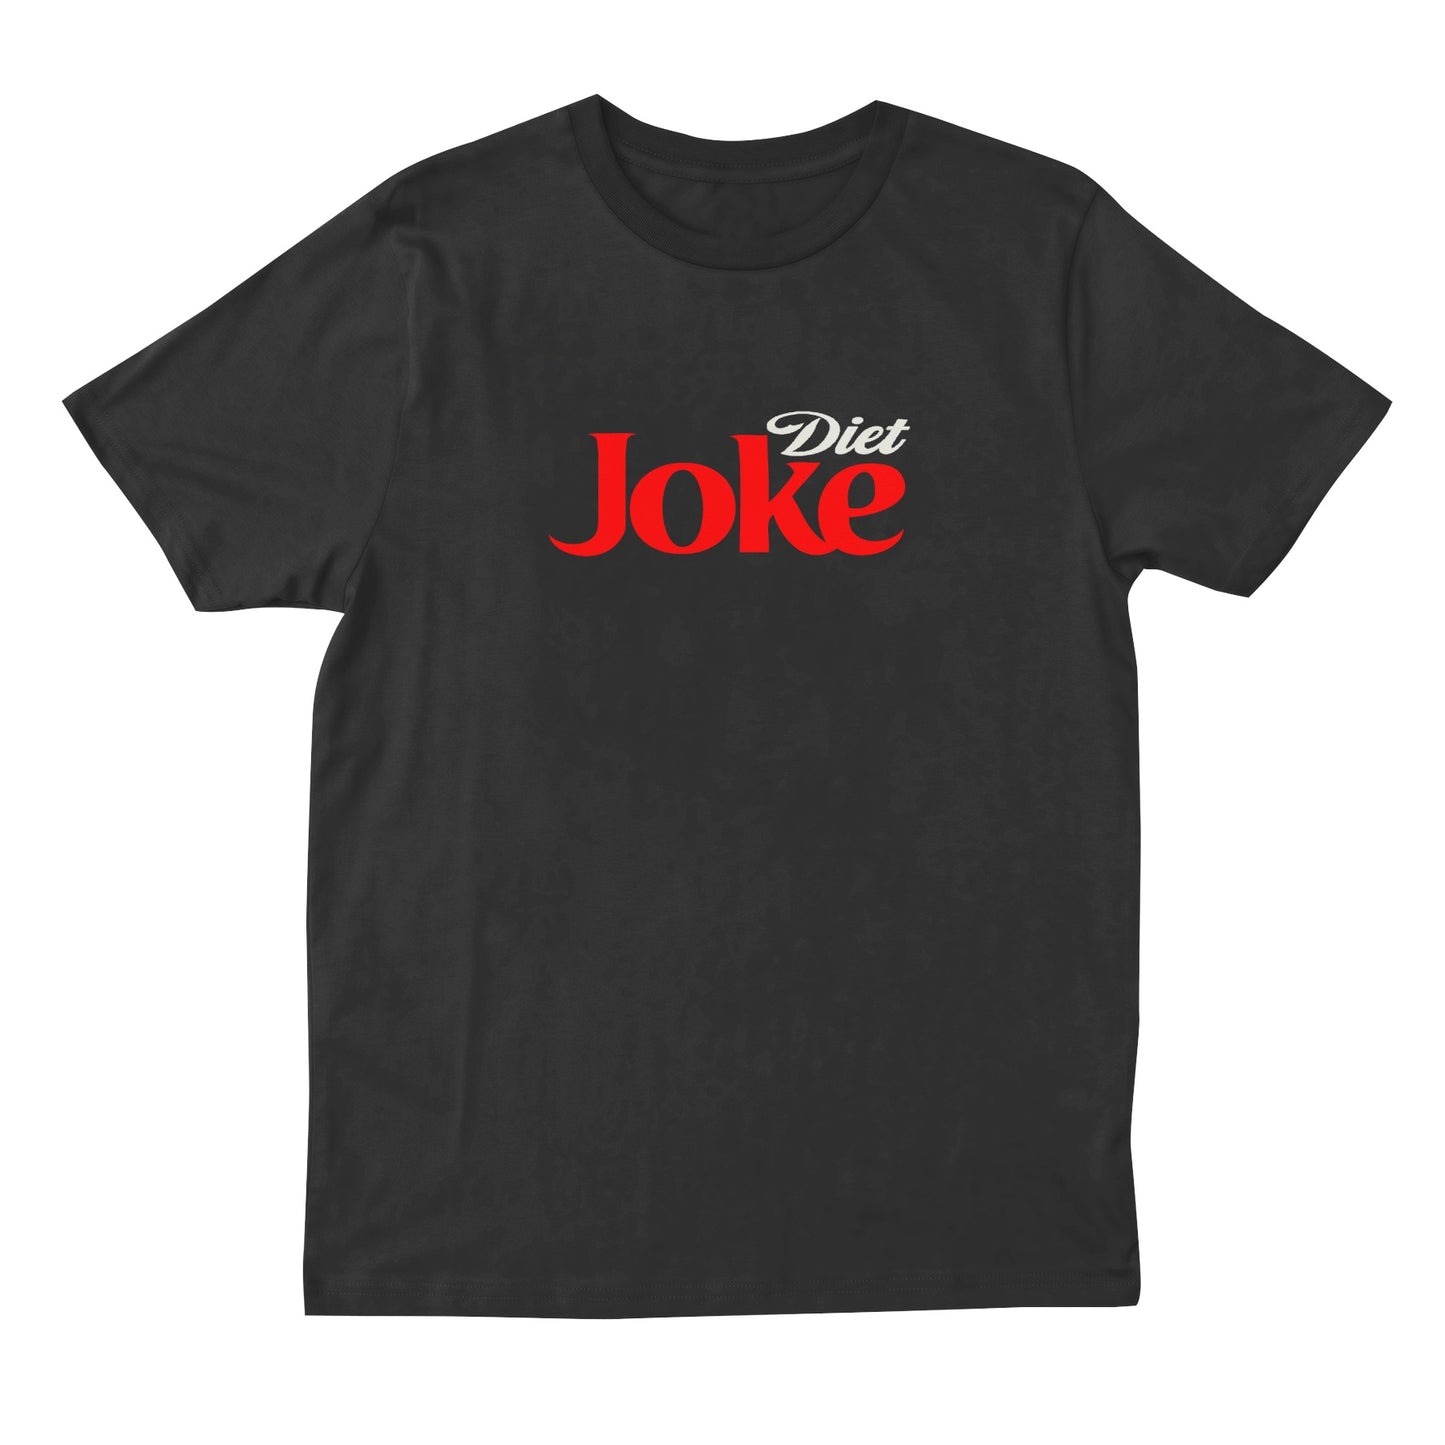 diet joke t shirt - black